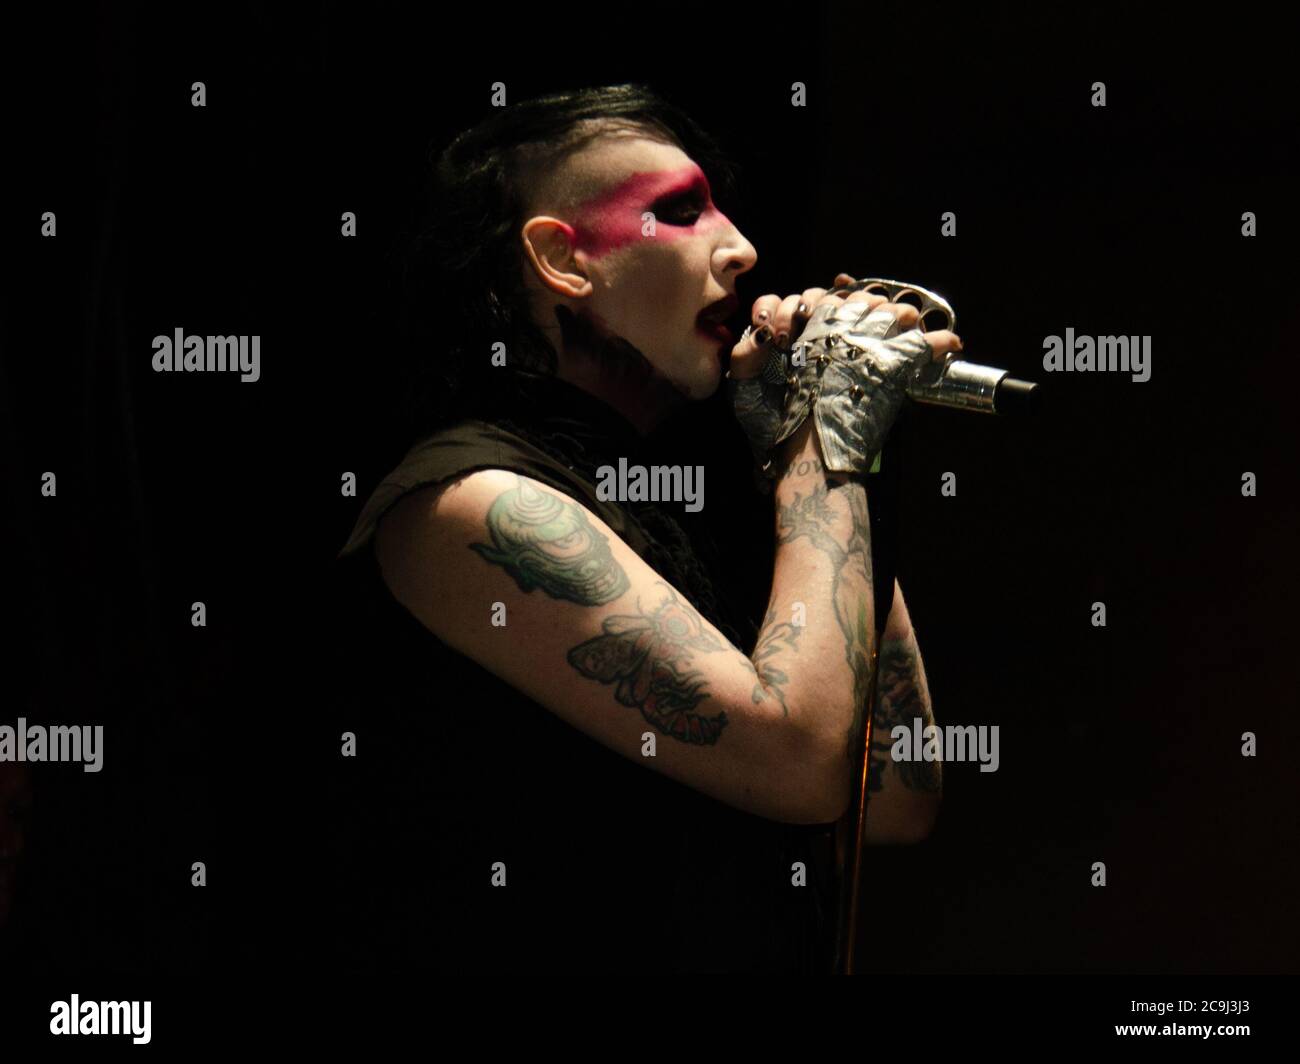 18 agosto 2012, West Hollywood, California, USA: Marilyn Manson suona il 3° giorno del Sunset Strip Music Festival (immagine di credito: © Billy Bendnight/ZUMA Wire) Foto Stock